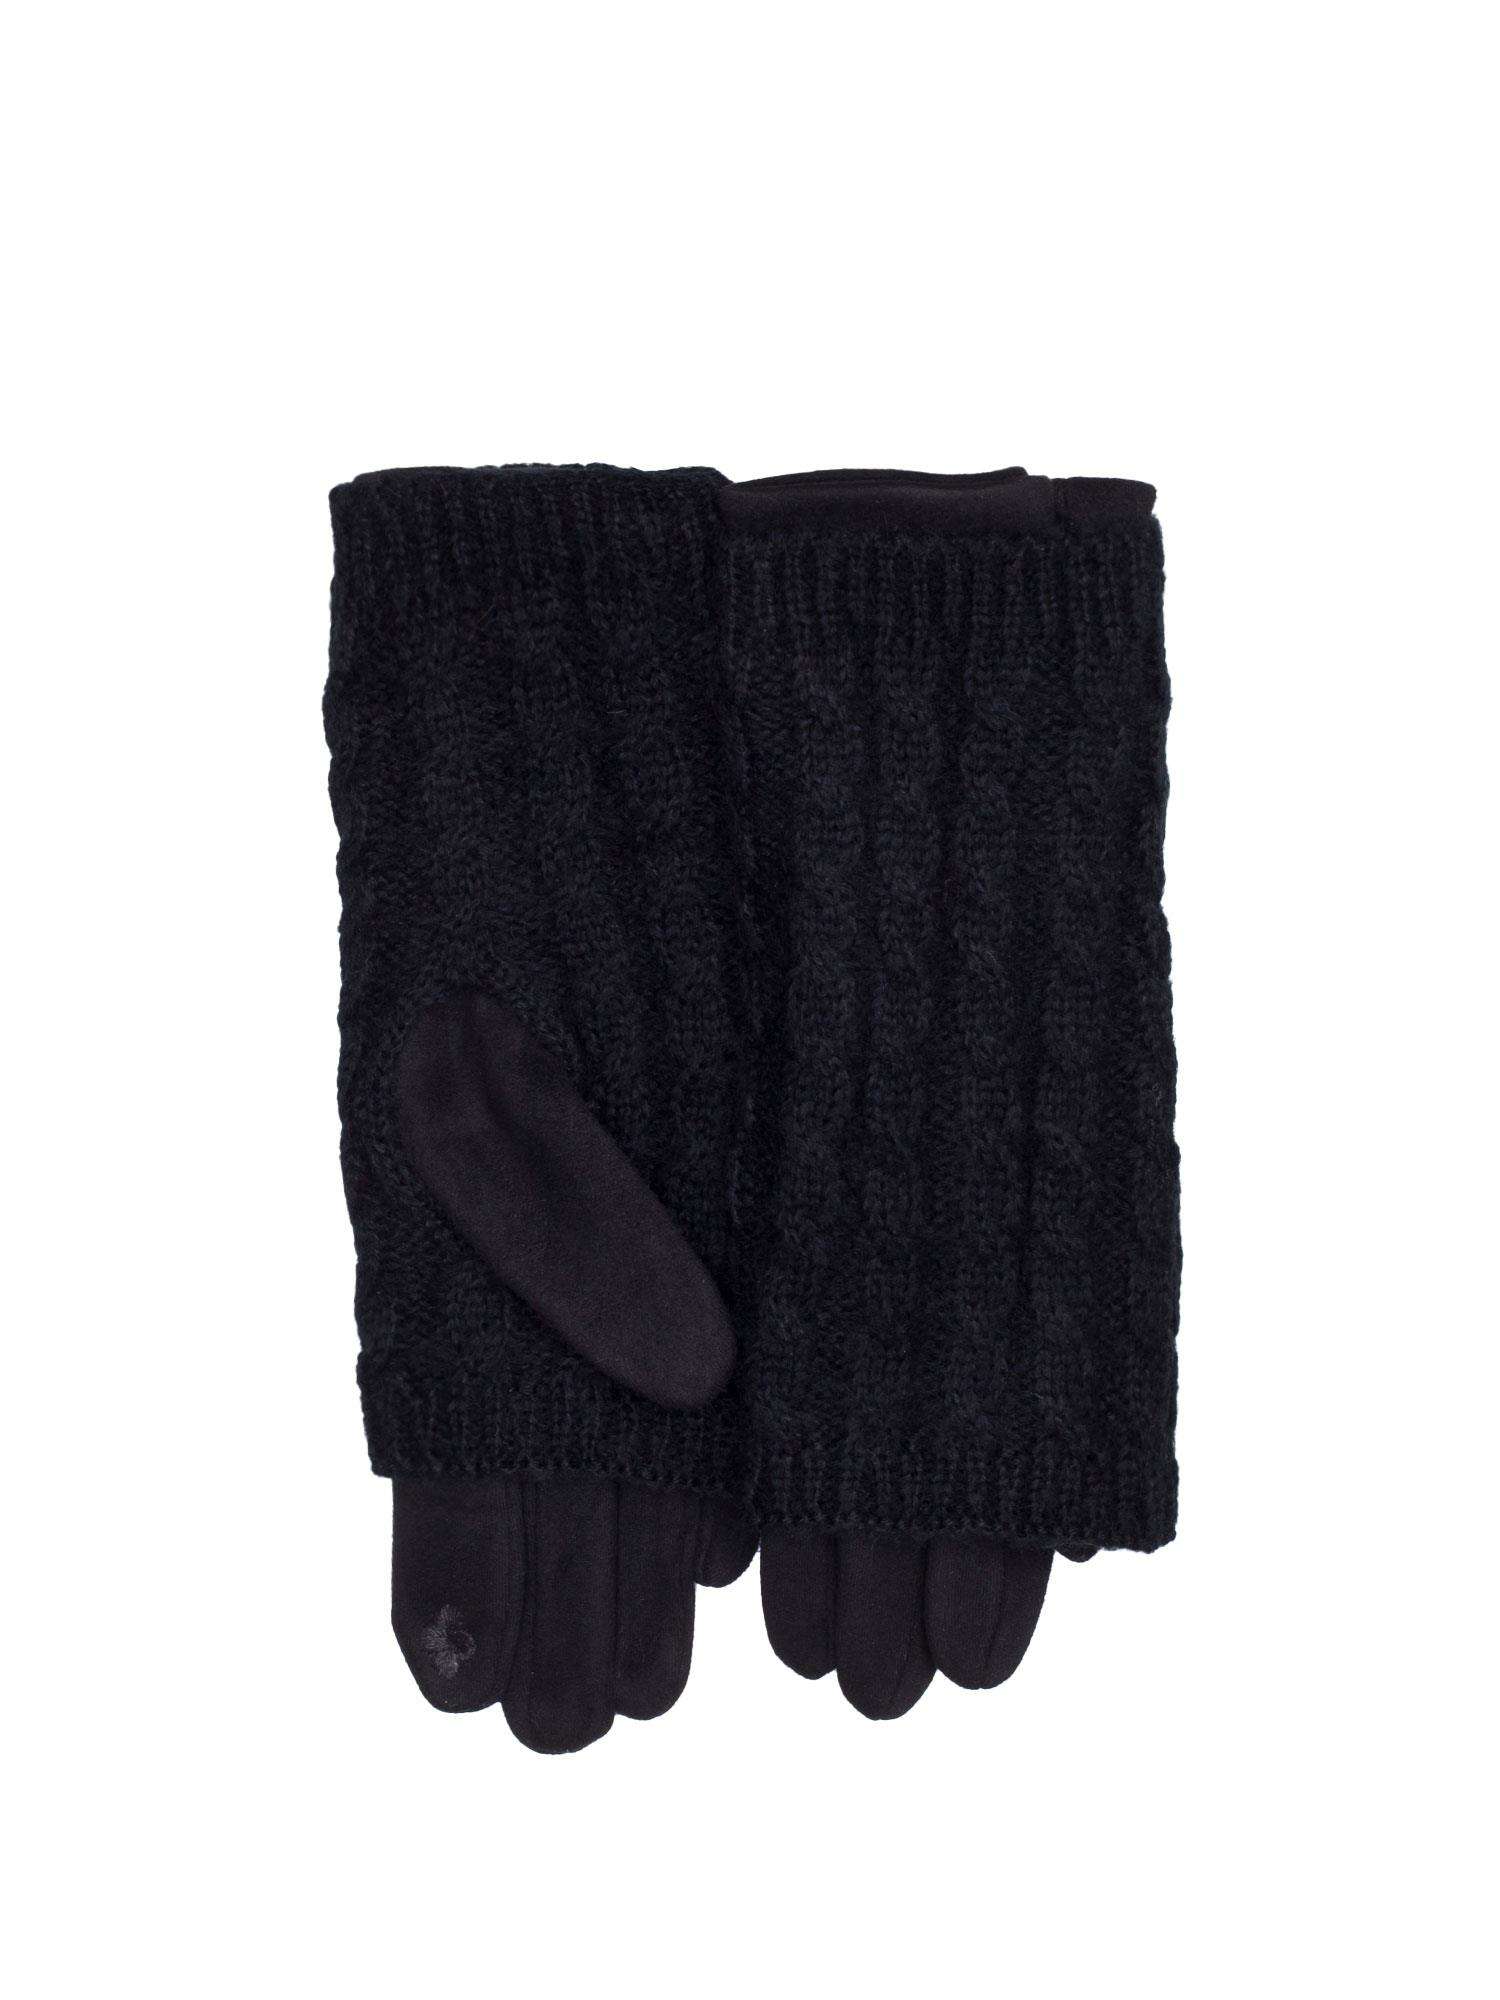 Dámske čierne rukavice - UNI